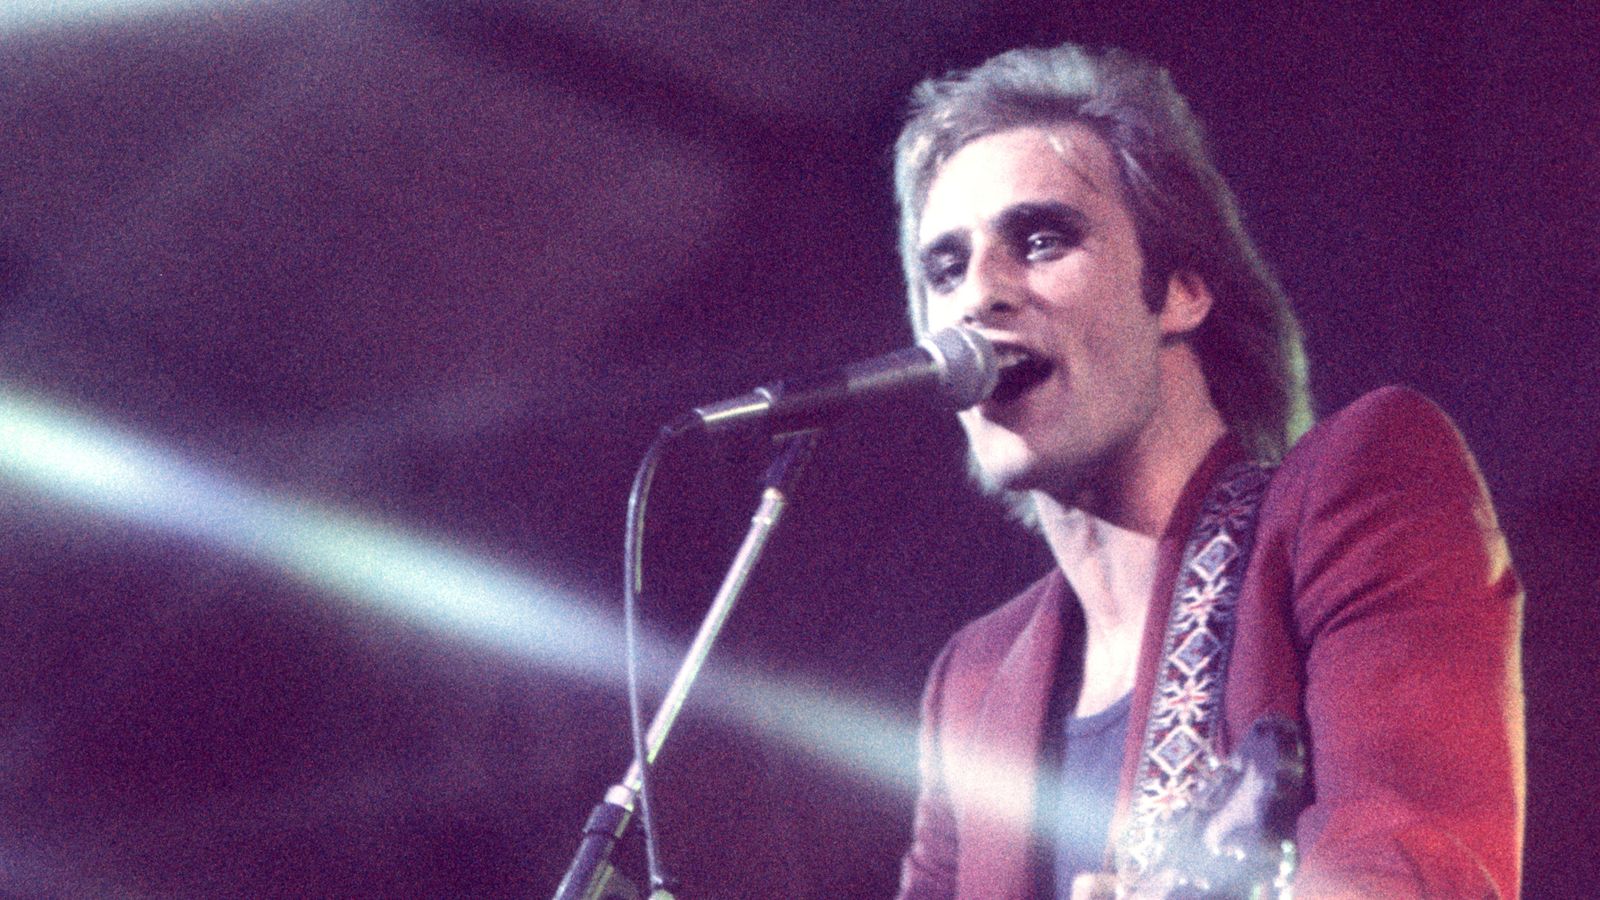 Cockney Rebel frontman Steve Harley dies - singer's 'devastated' family pays tribute